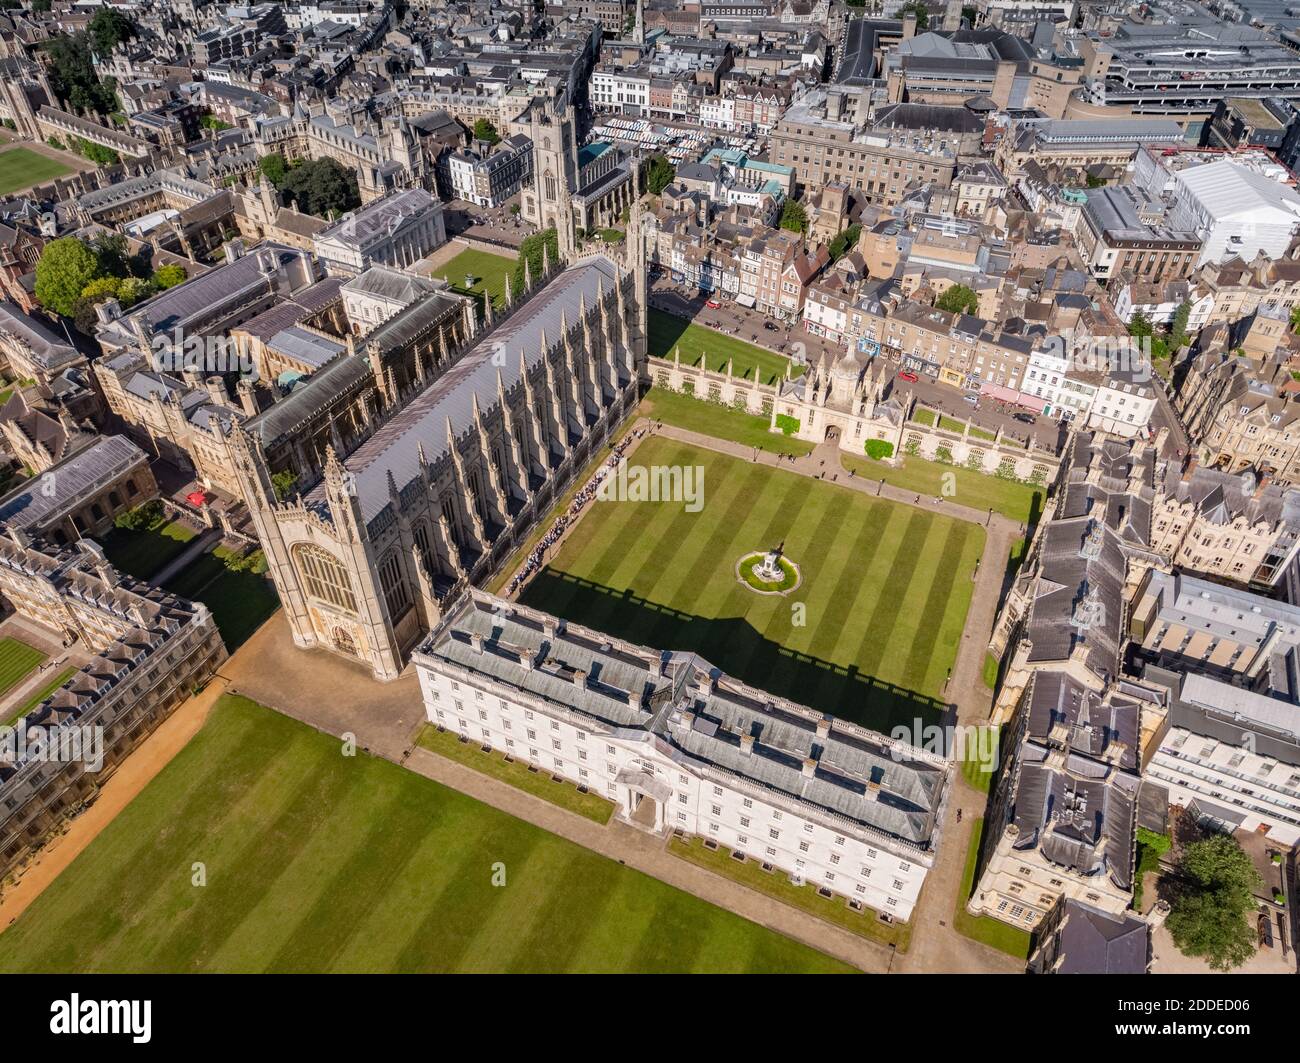 Vista aérea del King's College Cambridge en Inglaterra, Reino Unido. King's College es un colegio constituyente de la Universidad de Cambridge. Foto de stock